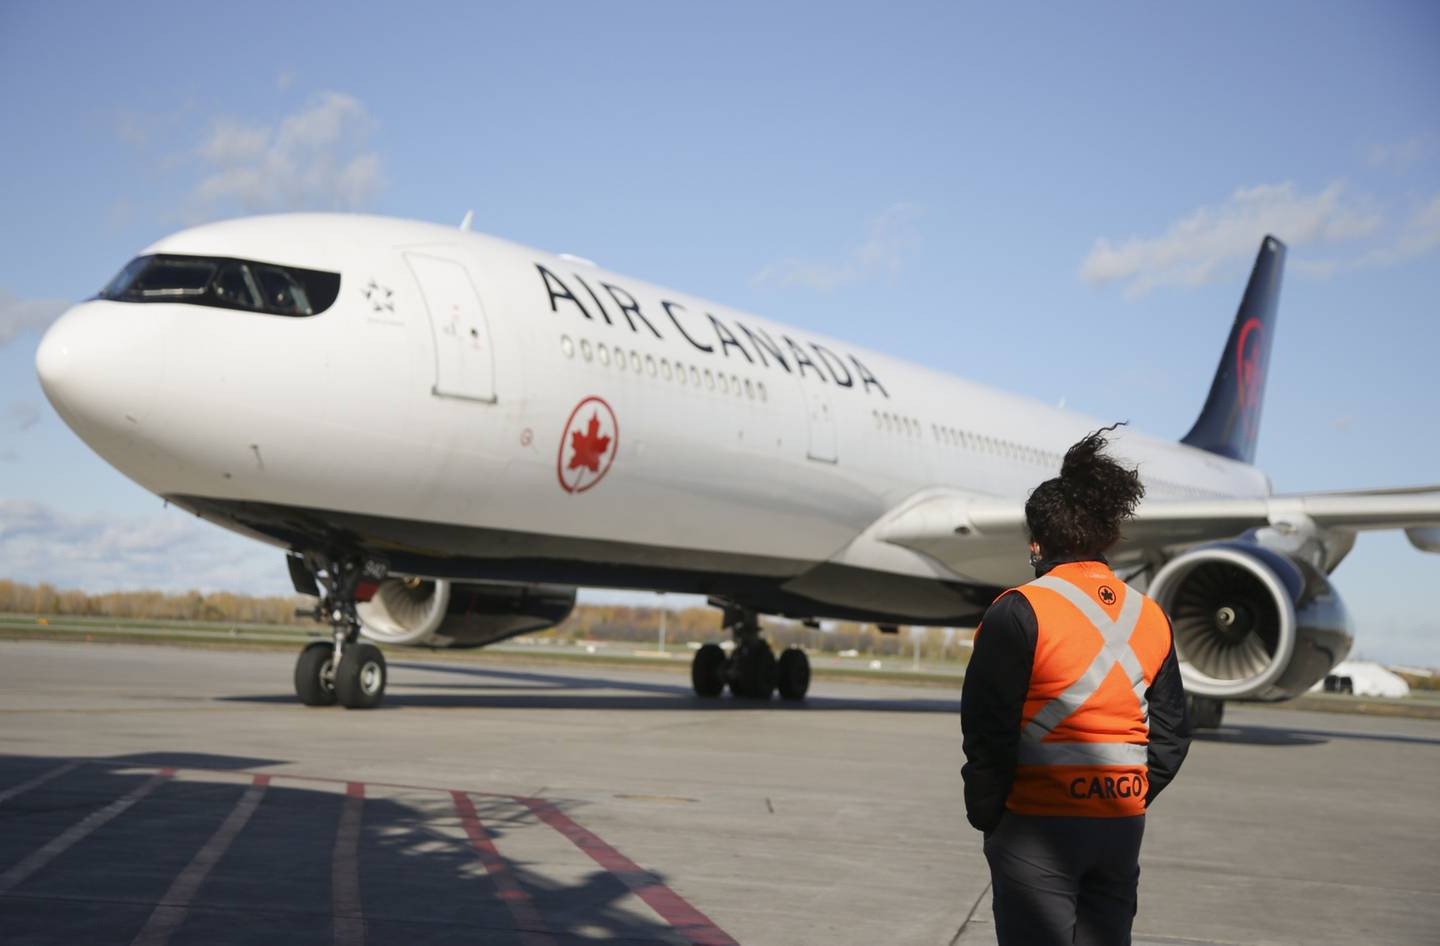 Un Airbus A330 de Air Canada llega al aeropuerto internacional de Montreal-Pierre Elliott Trudeau (YUL) en Montreal.dfd